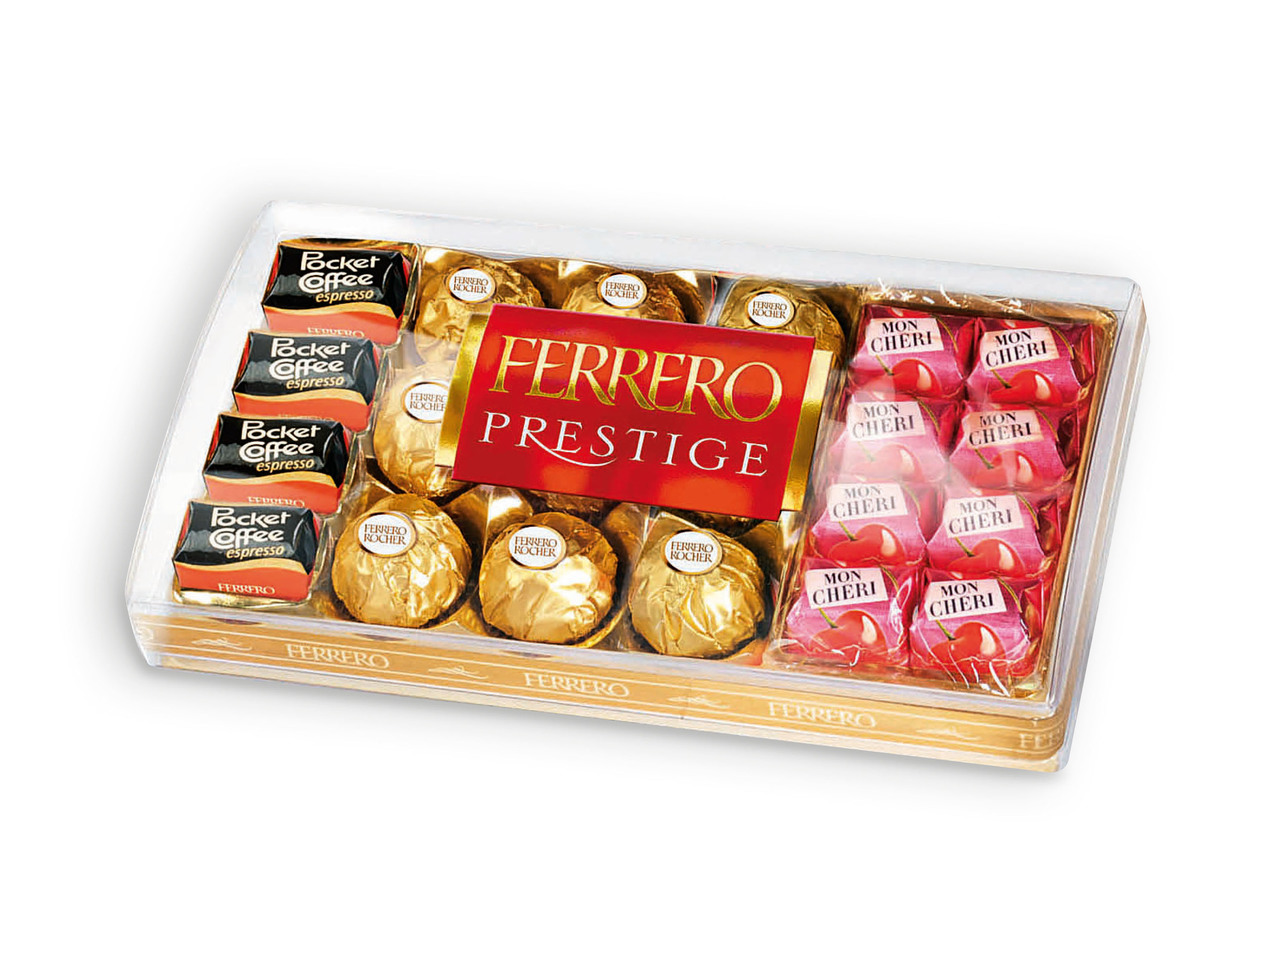 FERRERO ROCHER(R) Ferrero Prestige